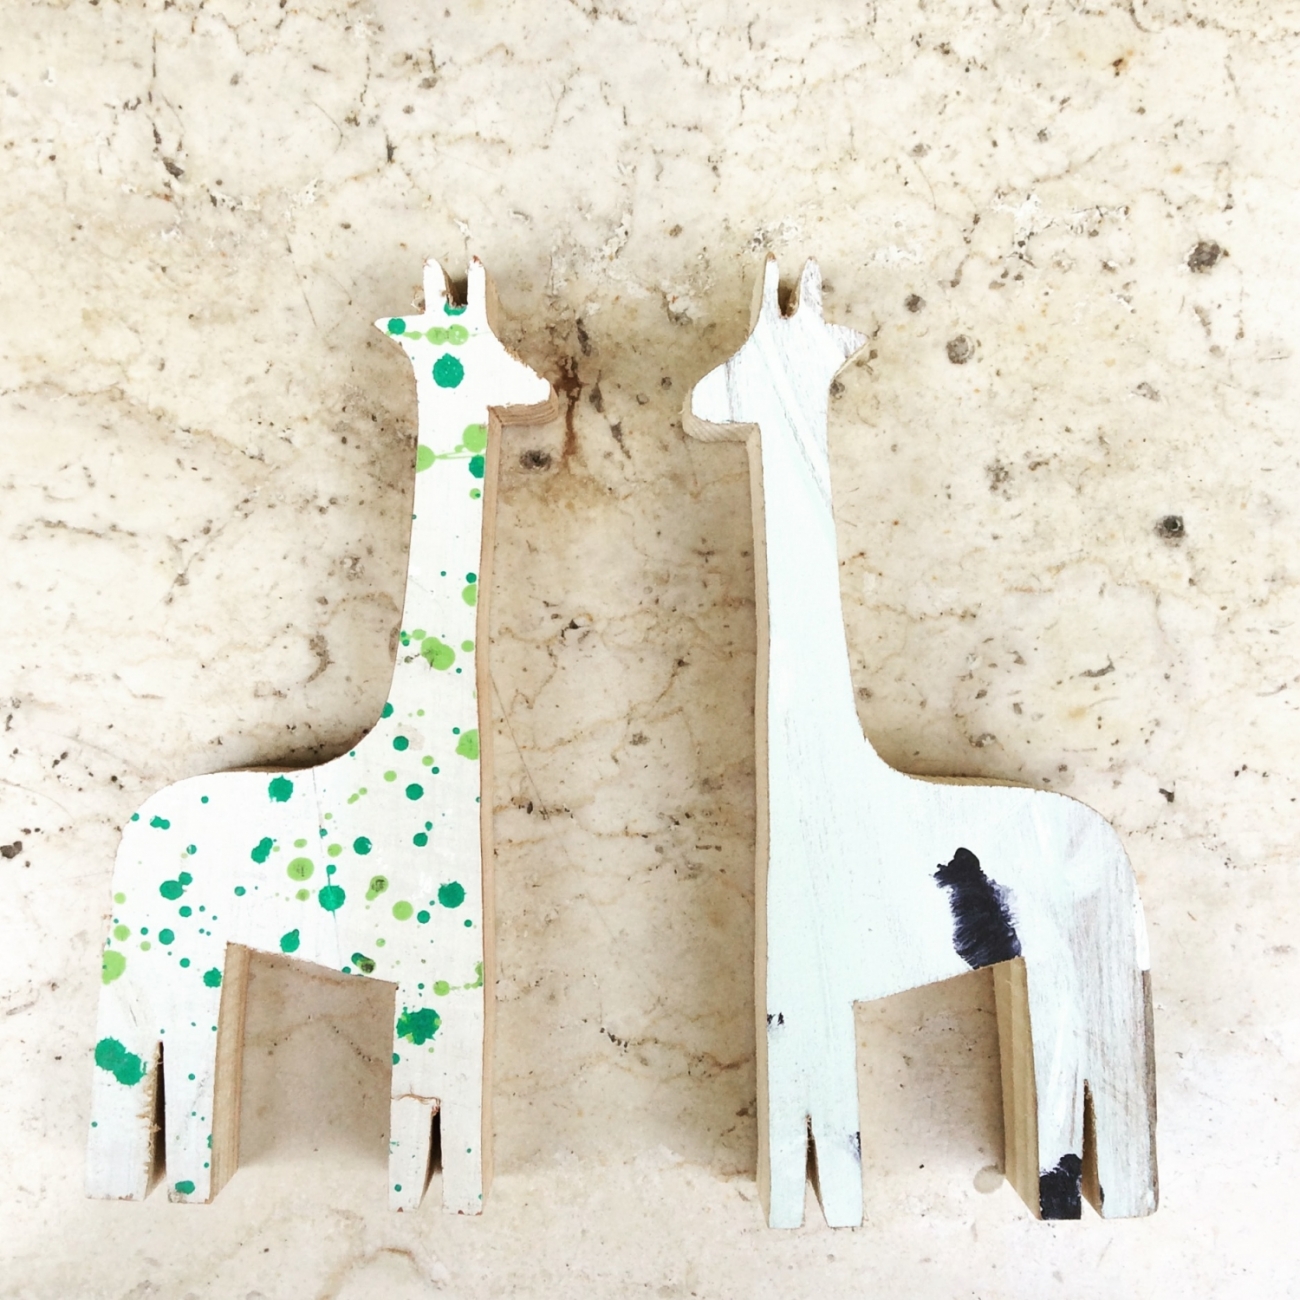 Gerry la giraffa Jane Harman conservazione e restauro mobili a Firenze